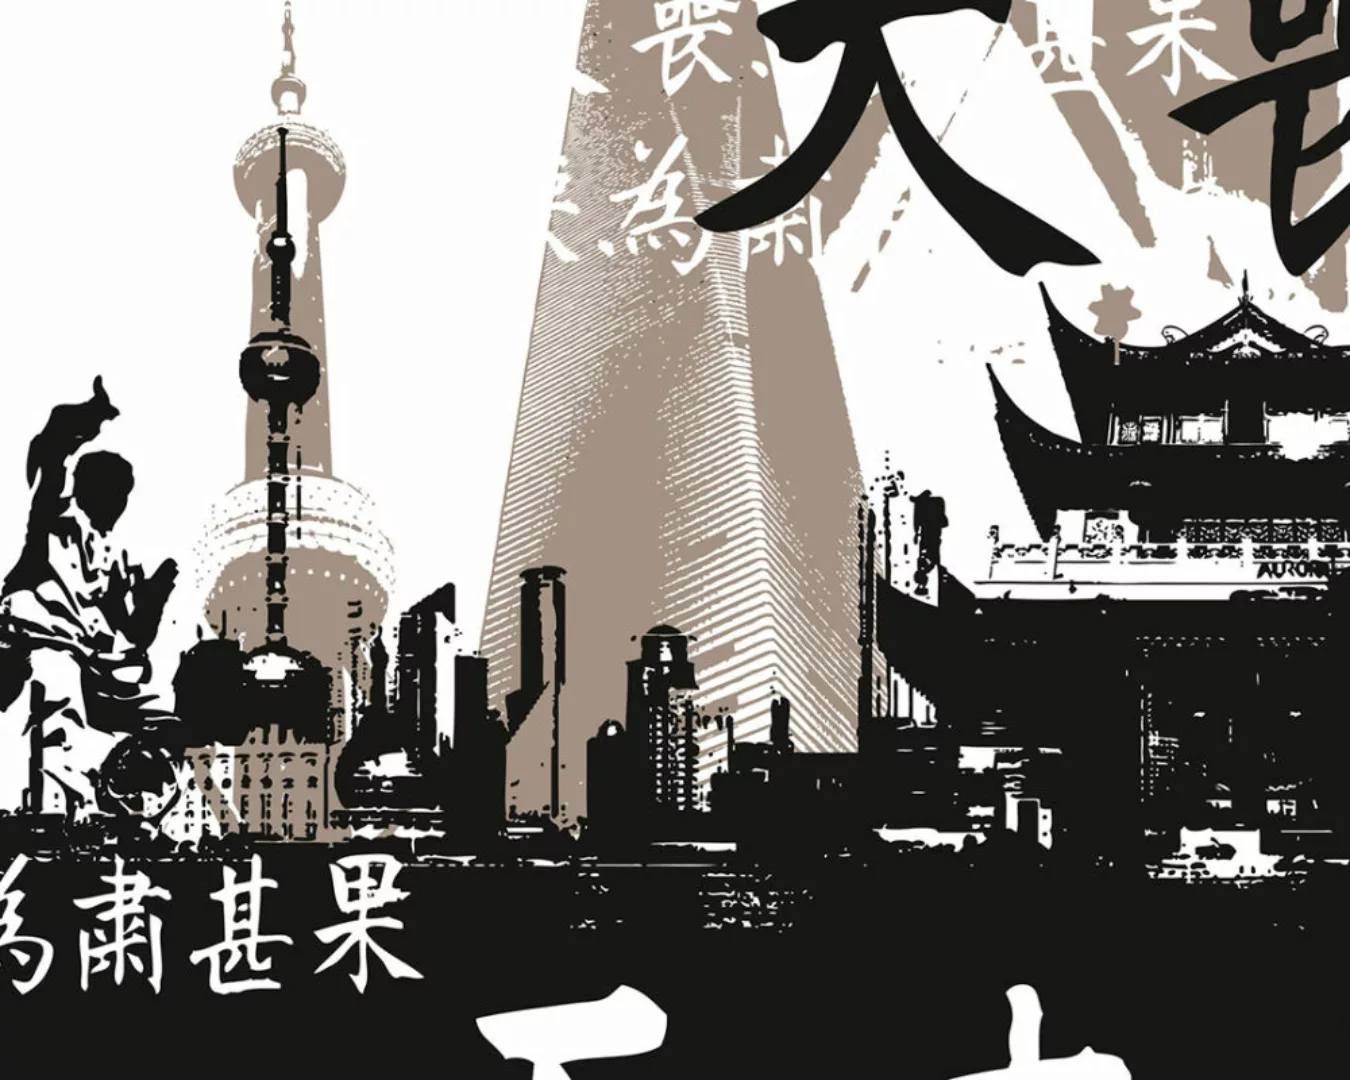 Fototapete "Shanghai" 4,00x2,50 m / Glattvlies Brillant günstig online kaufen